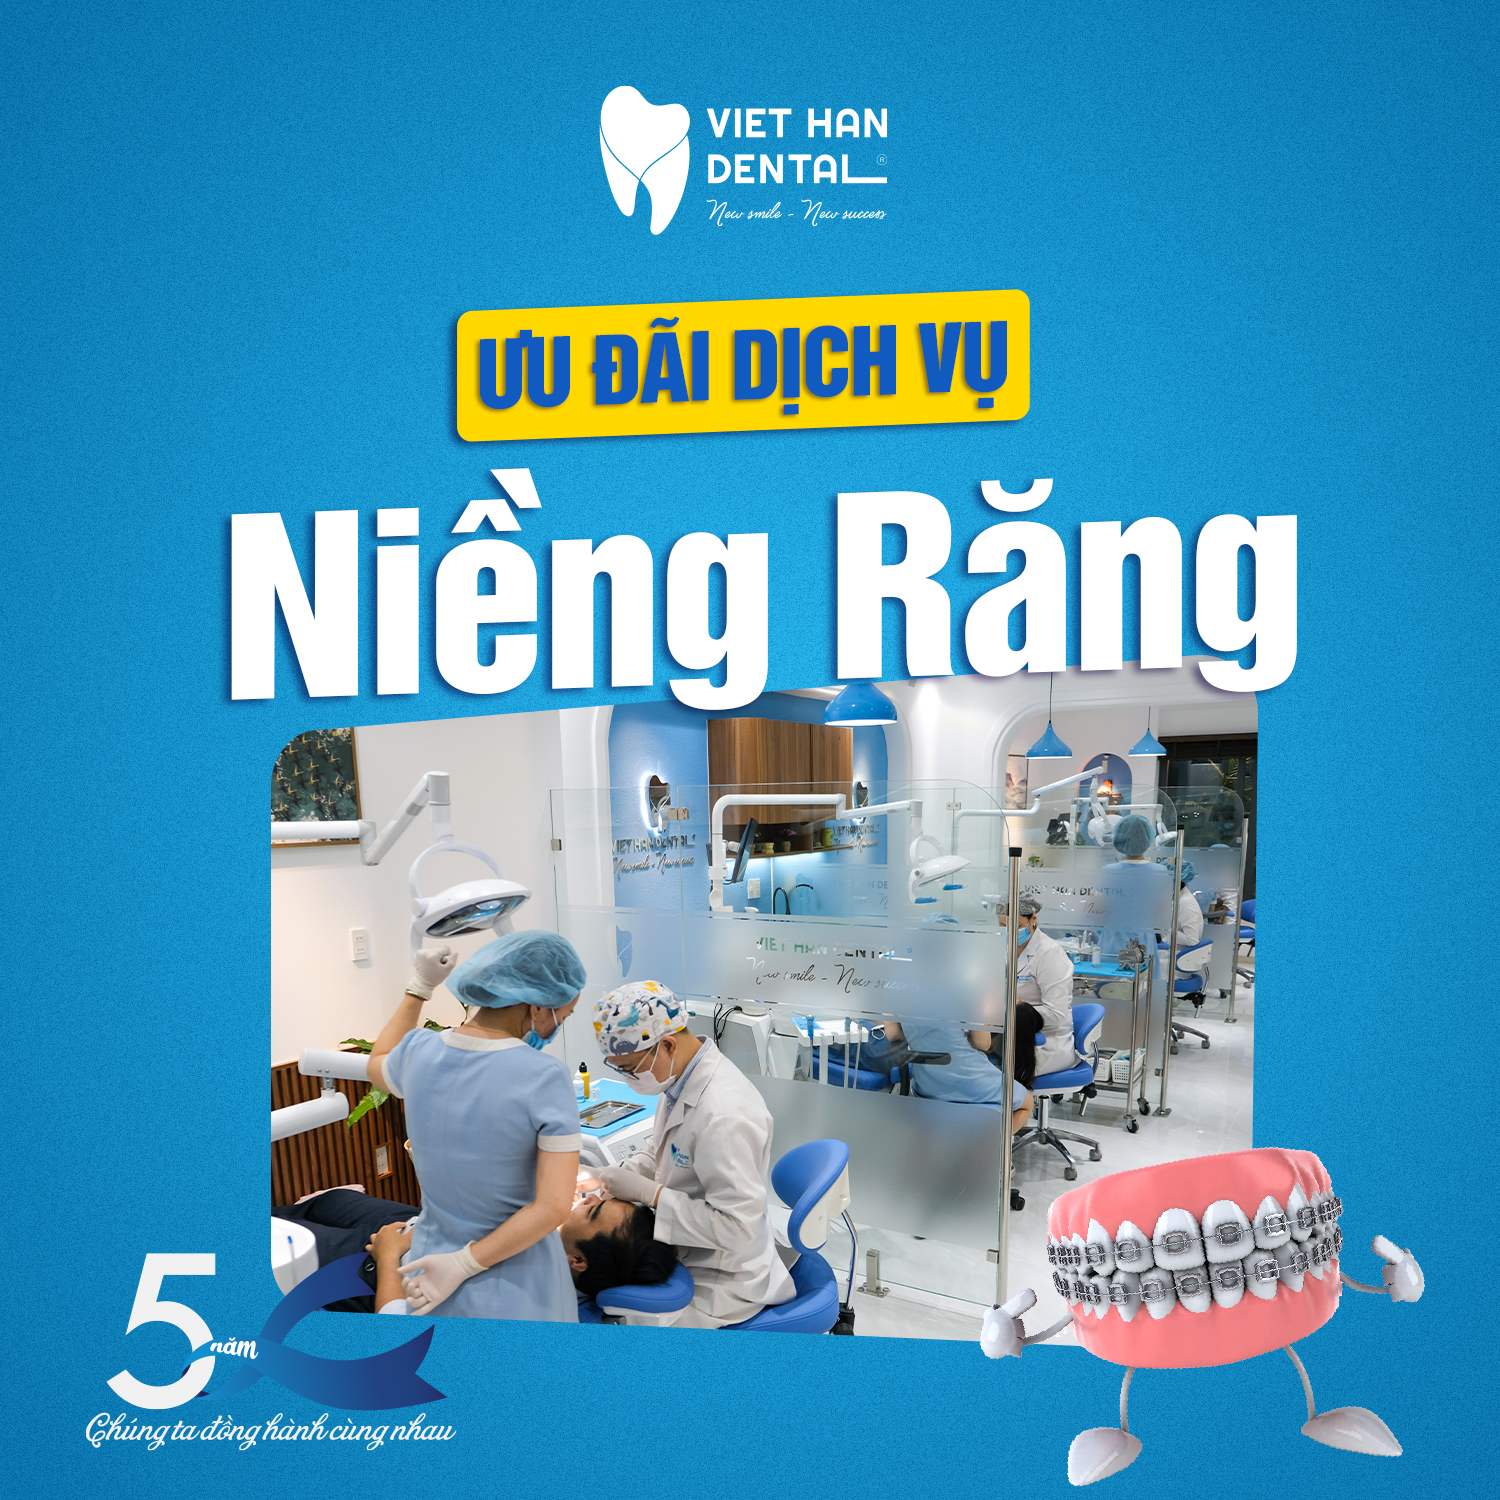 nha-khoa-Viet-Han-sinh-nhat-vang-ngan-uu-dai